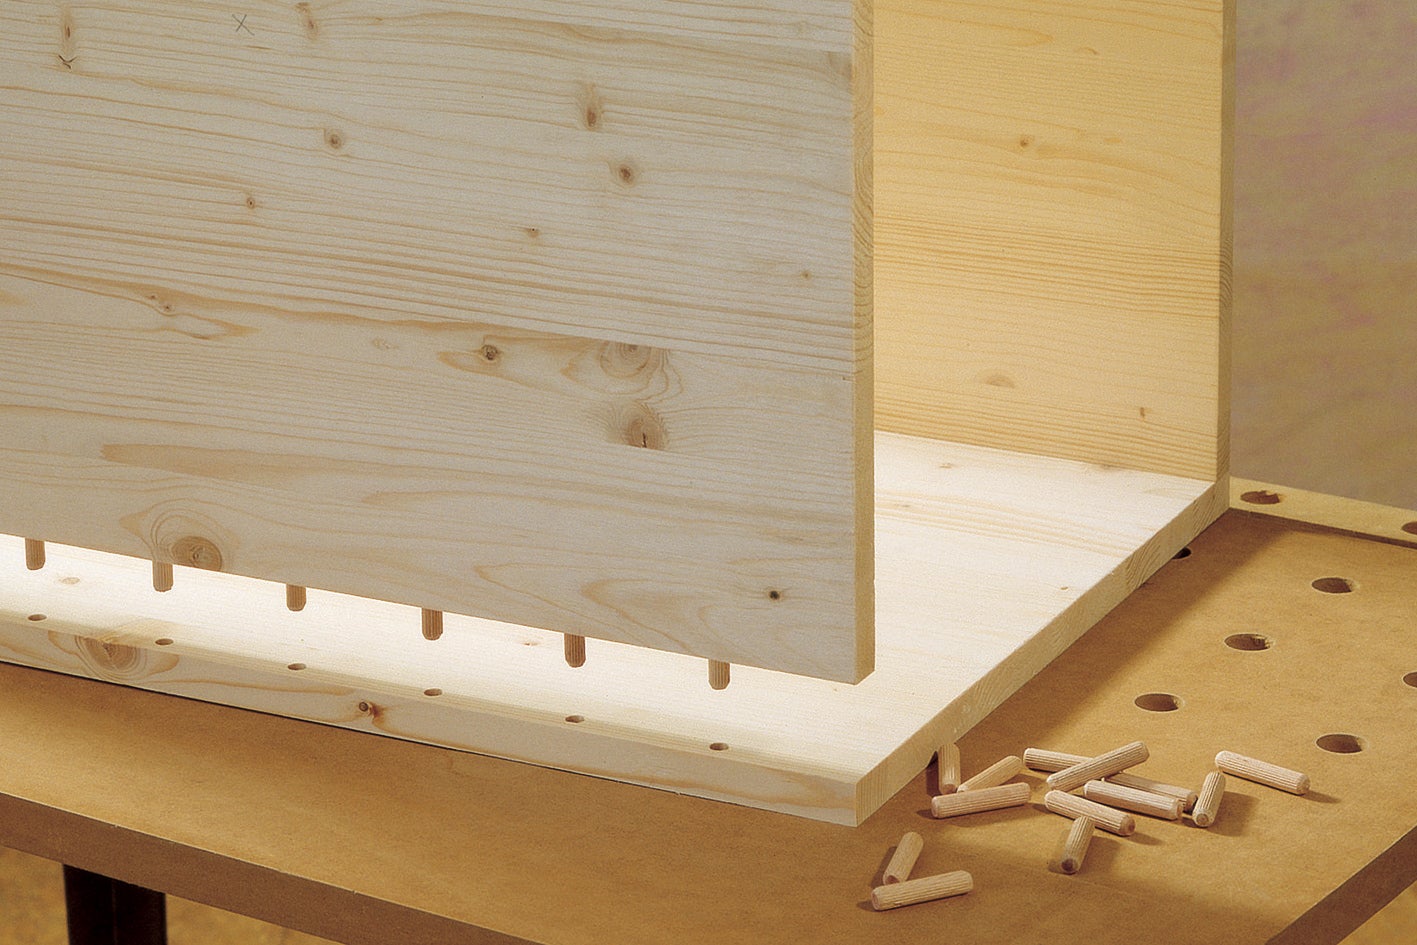 Cómo pegar madera: selecciona el producto adecuado para tu